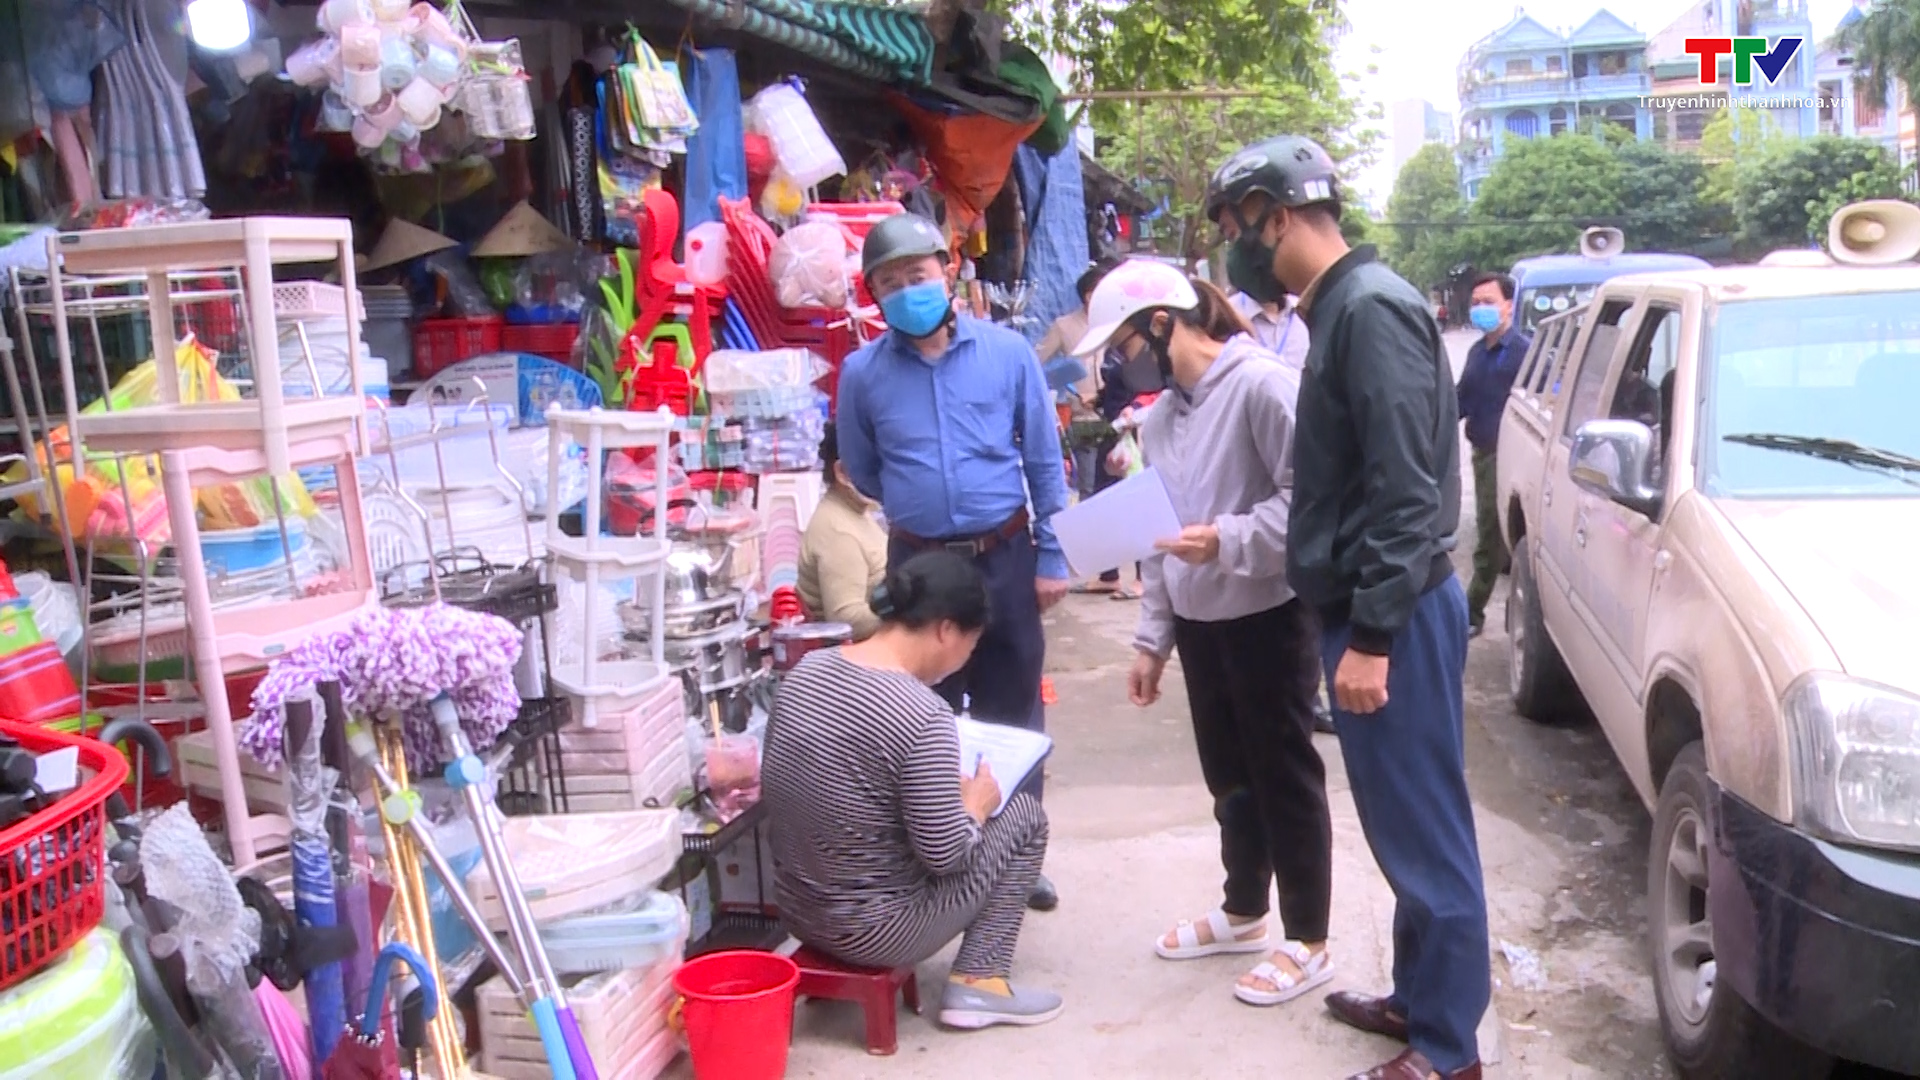 Thành phố Thanh Hoá tăng cường các giải pháp xoá bỏ chợ cóc, chợ tạm, xây dựng văn minh thương mại  - Ảnh 4.